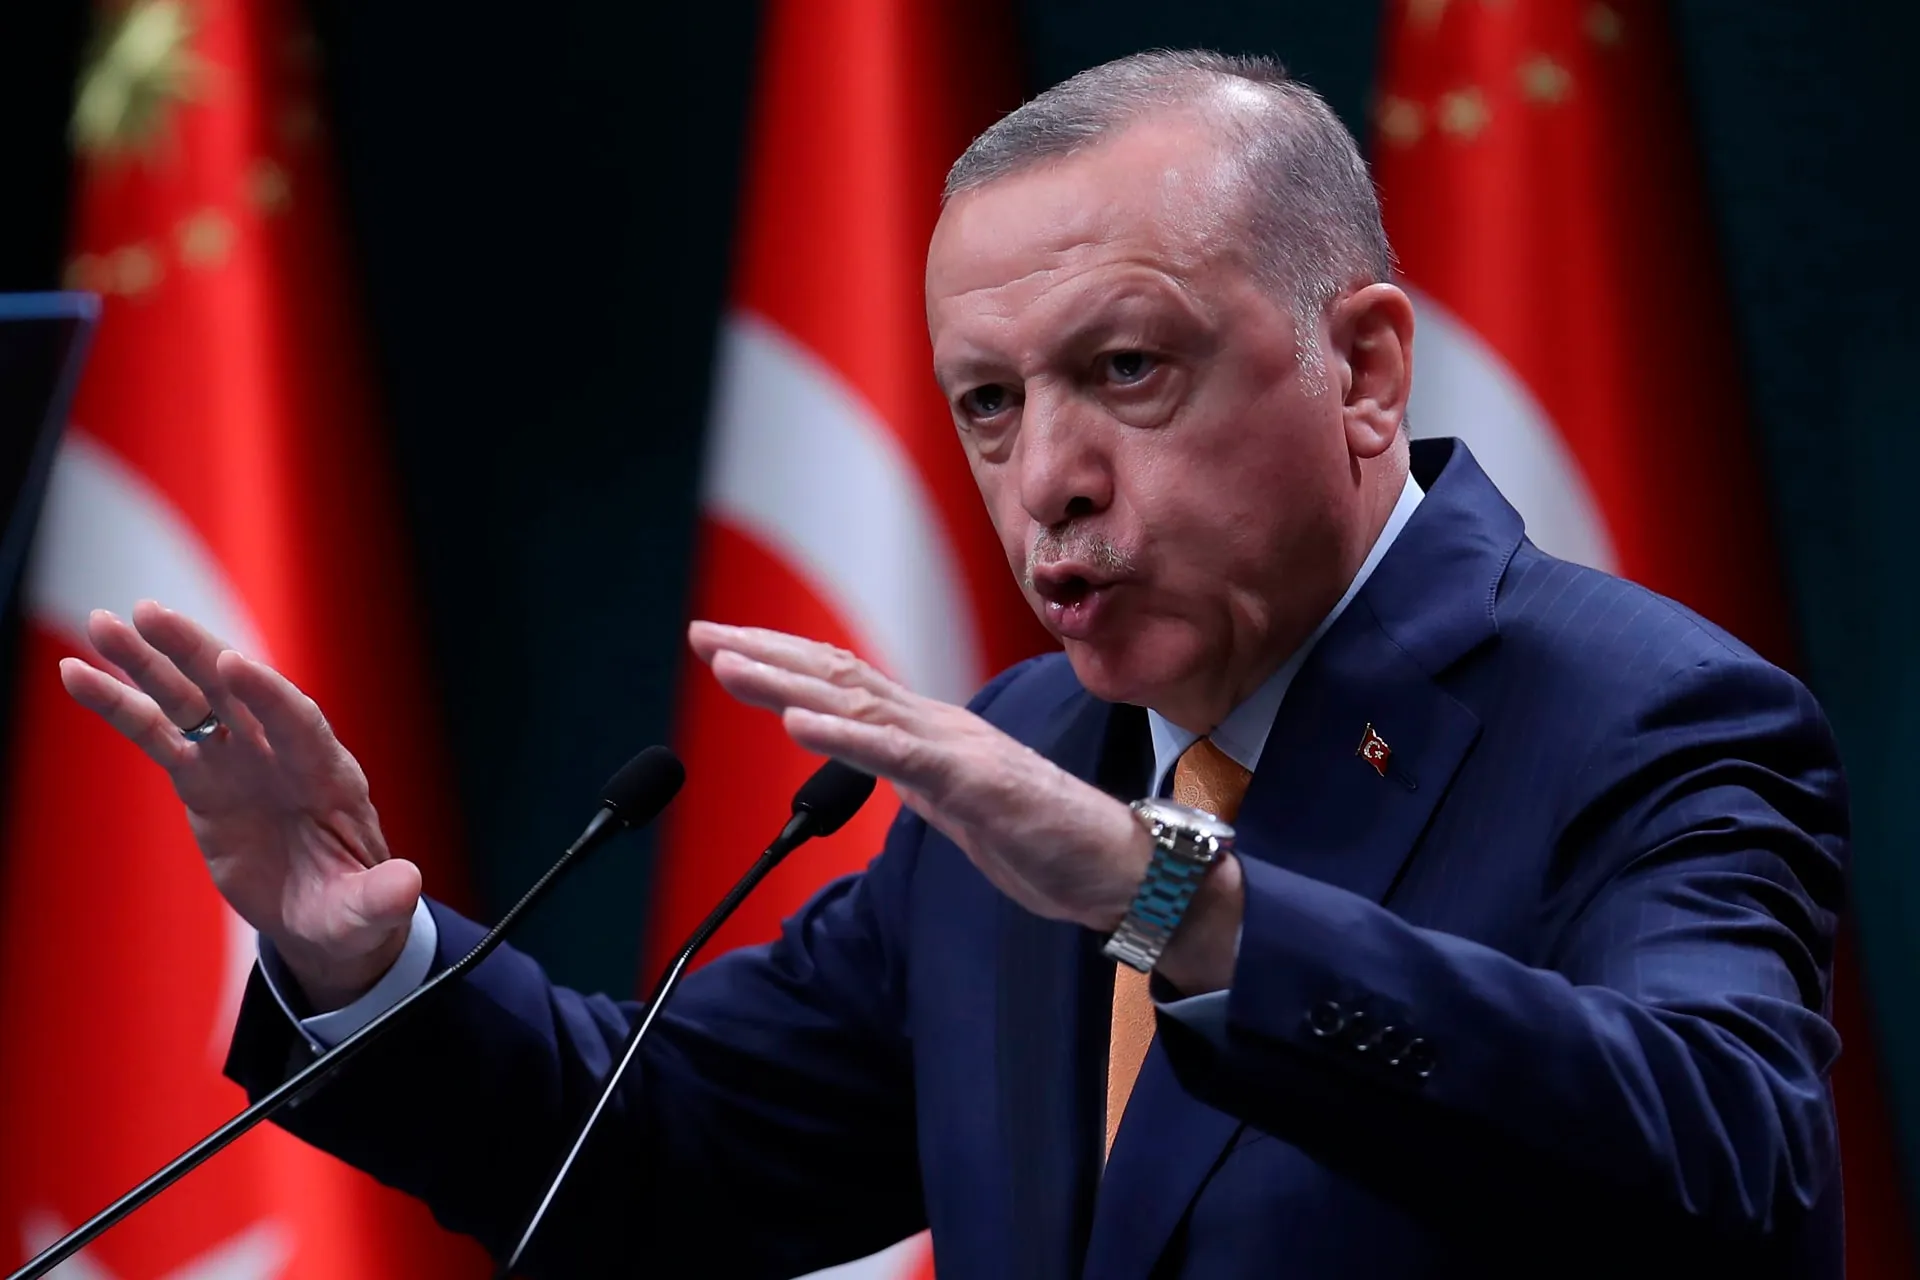 "أردوغان": محاربة التنظيمات الإرهابية هي السبيل لحل مشكلة الهجرة غير النظامية 